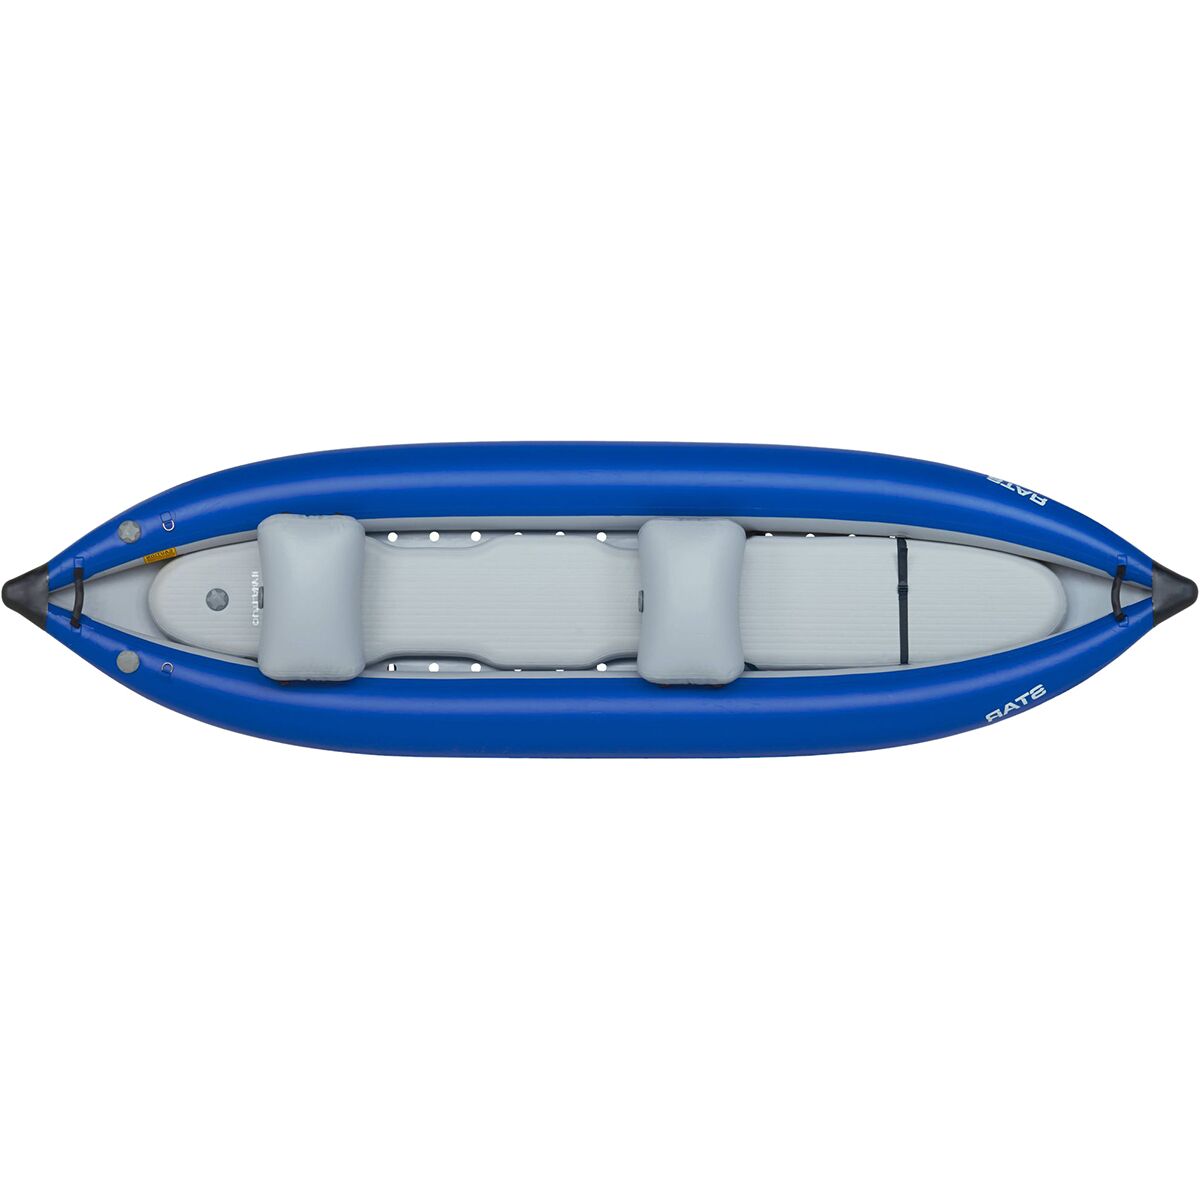 Star Outlaw II Inflatable Kayak